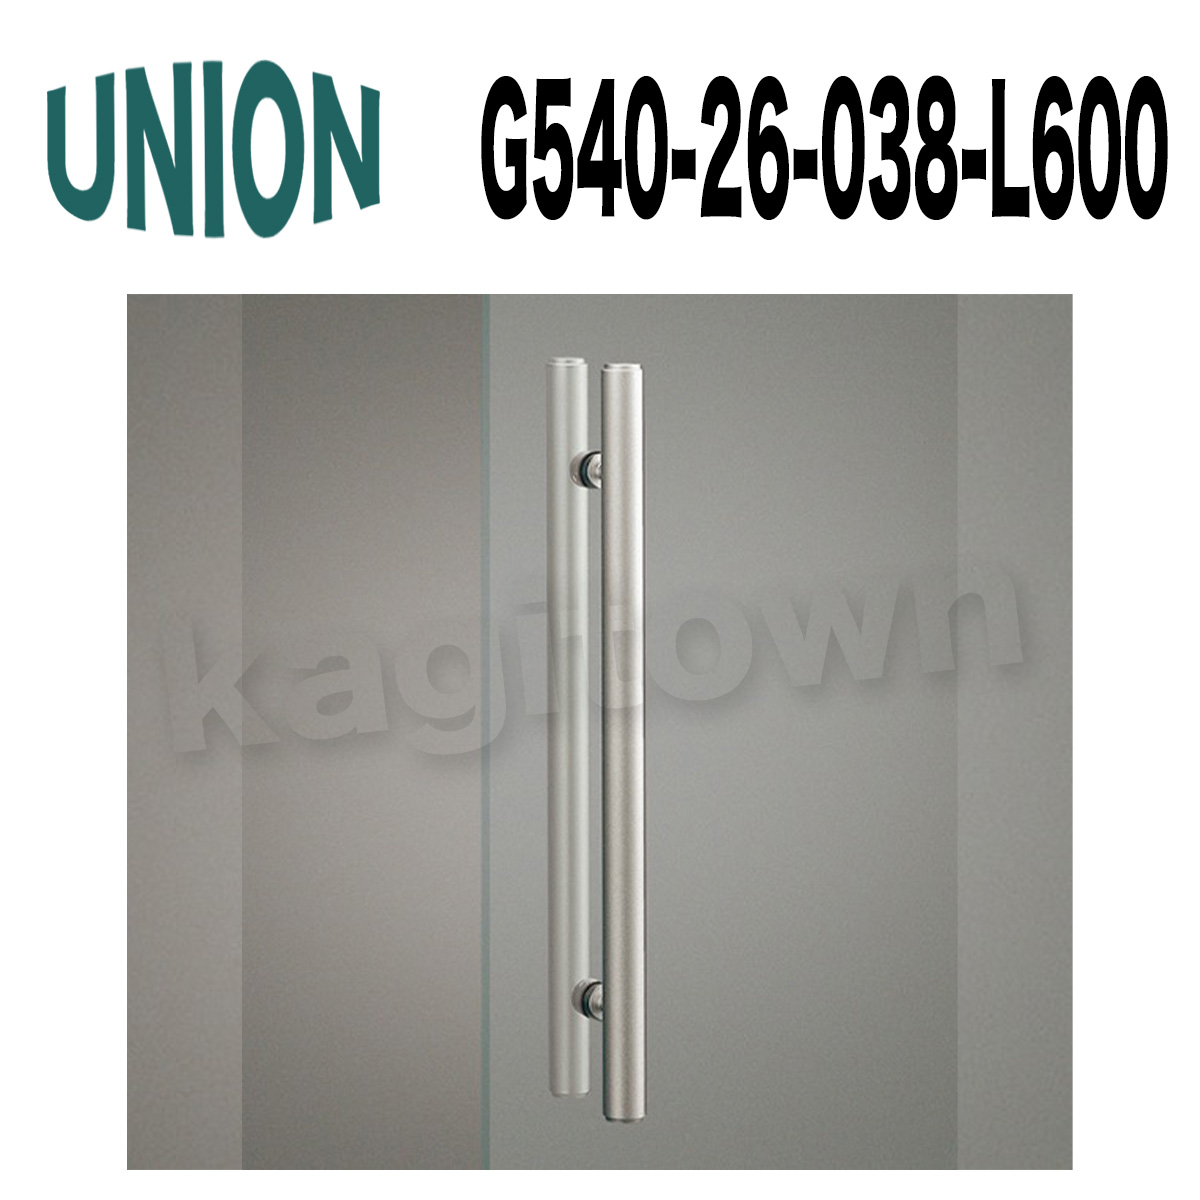 UNION【ユニオン】G540-26-038-L600[ドアハンドル] 押し棒（内外）